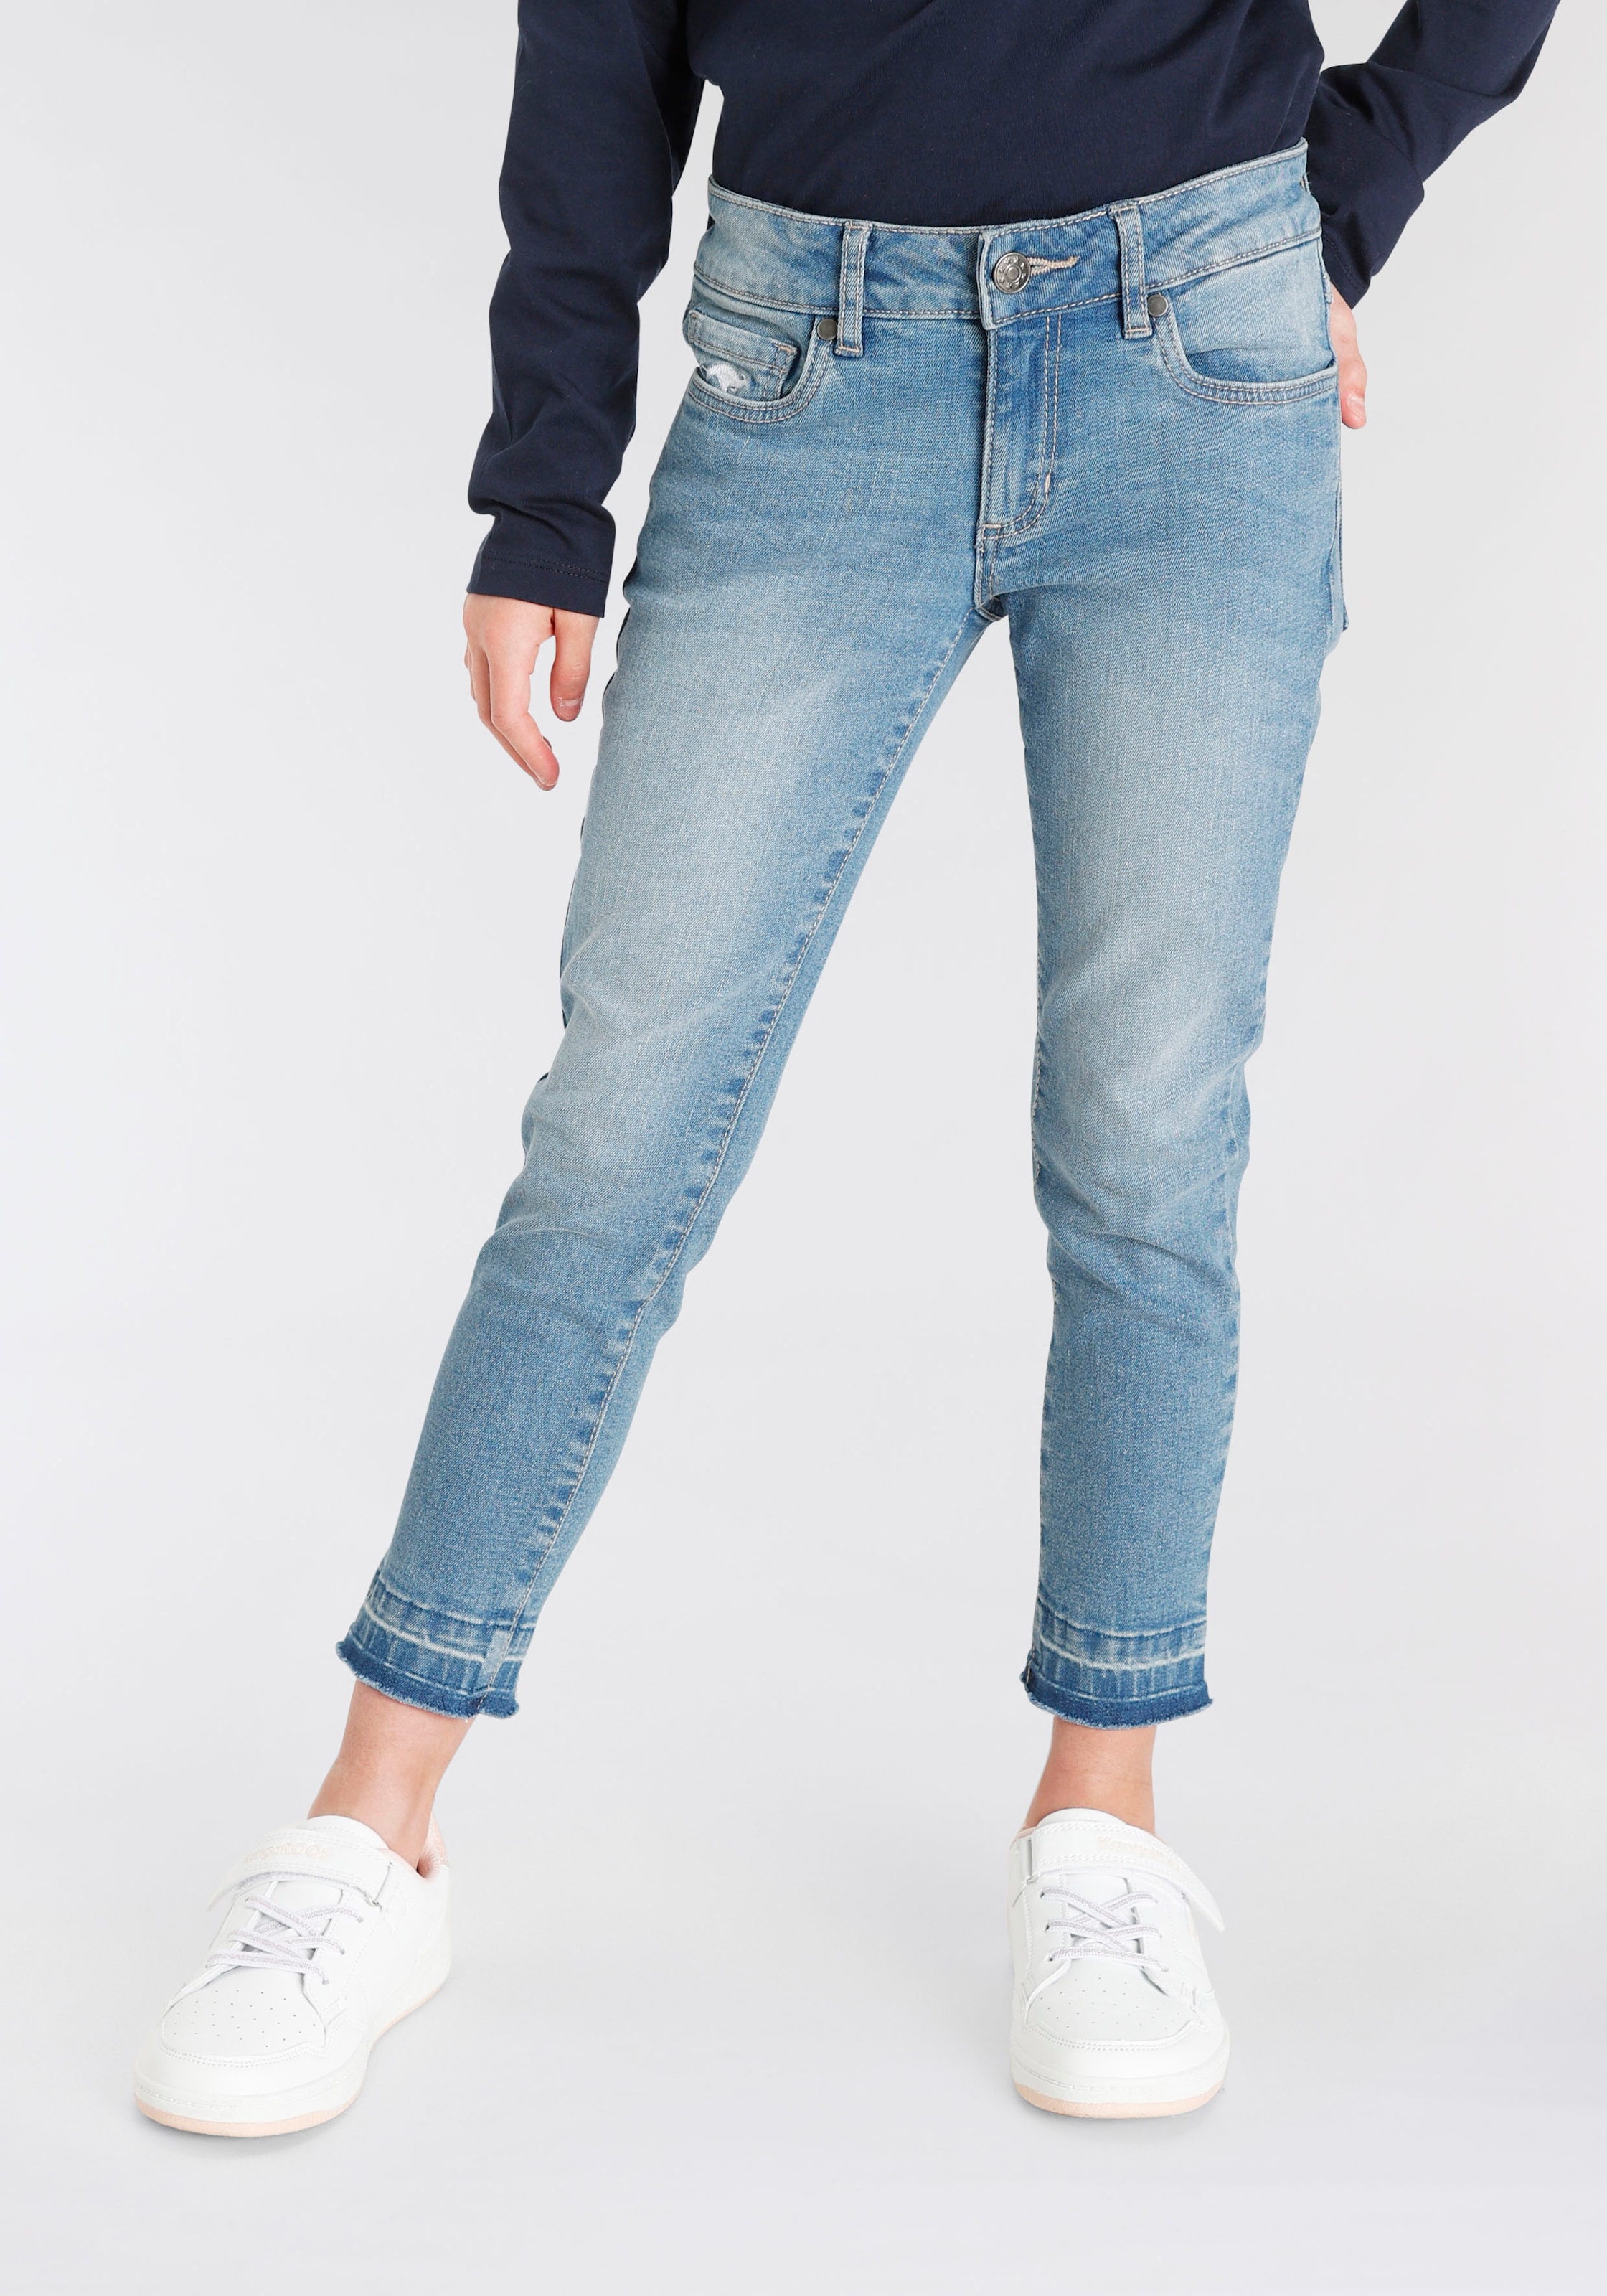 Günstige Jeans für Mädchen ❤ Universal. Jeder hat sein